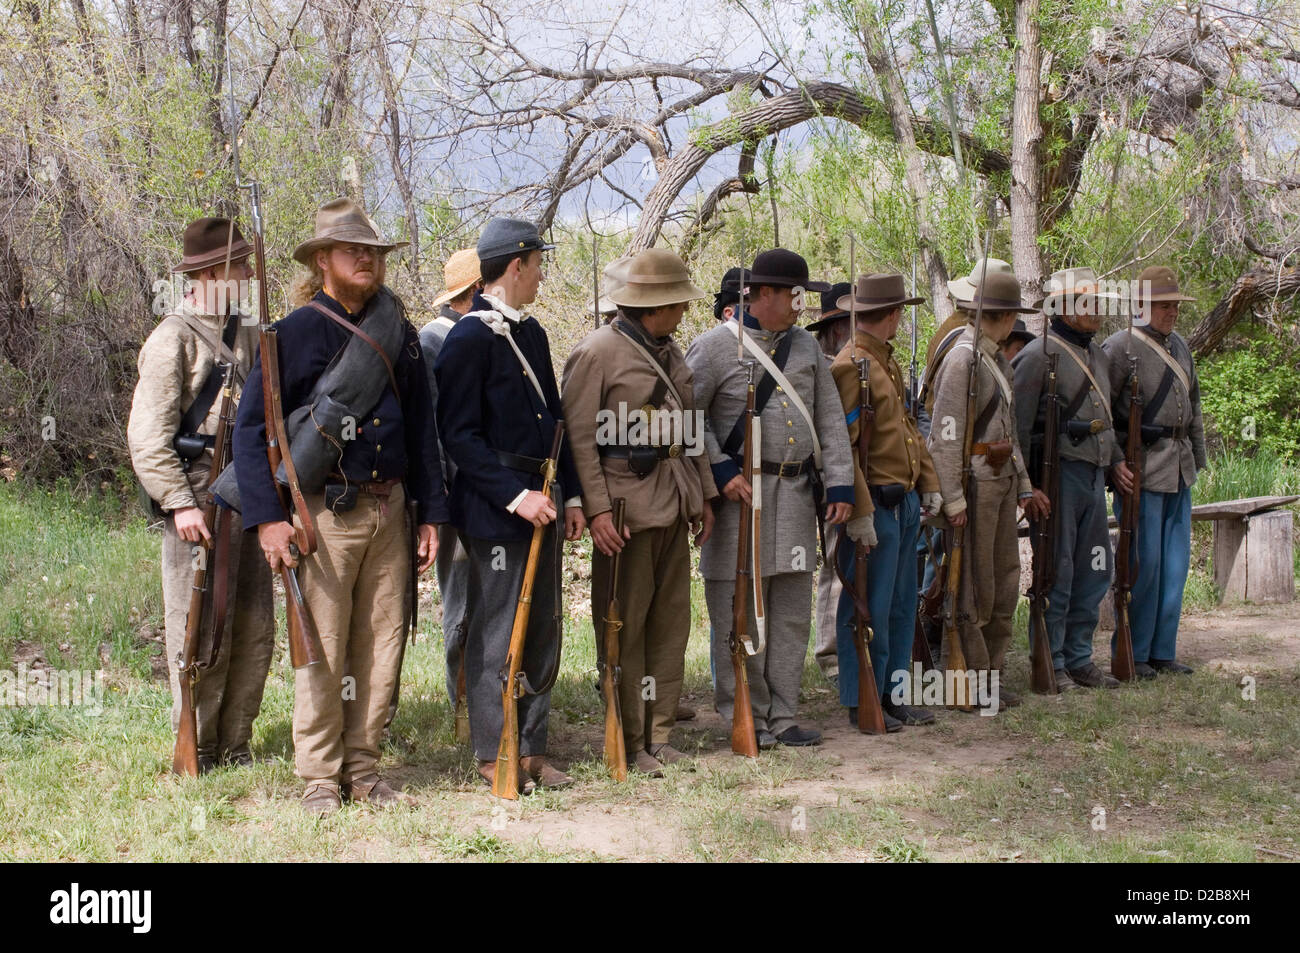 La guerre civile des batailles de reconstitution de Glorieta Pass et Apache Canyon au Nouveau Mexique. Banque D'Images